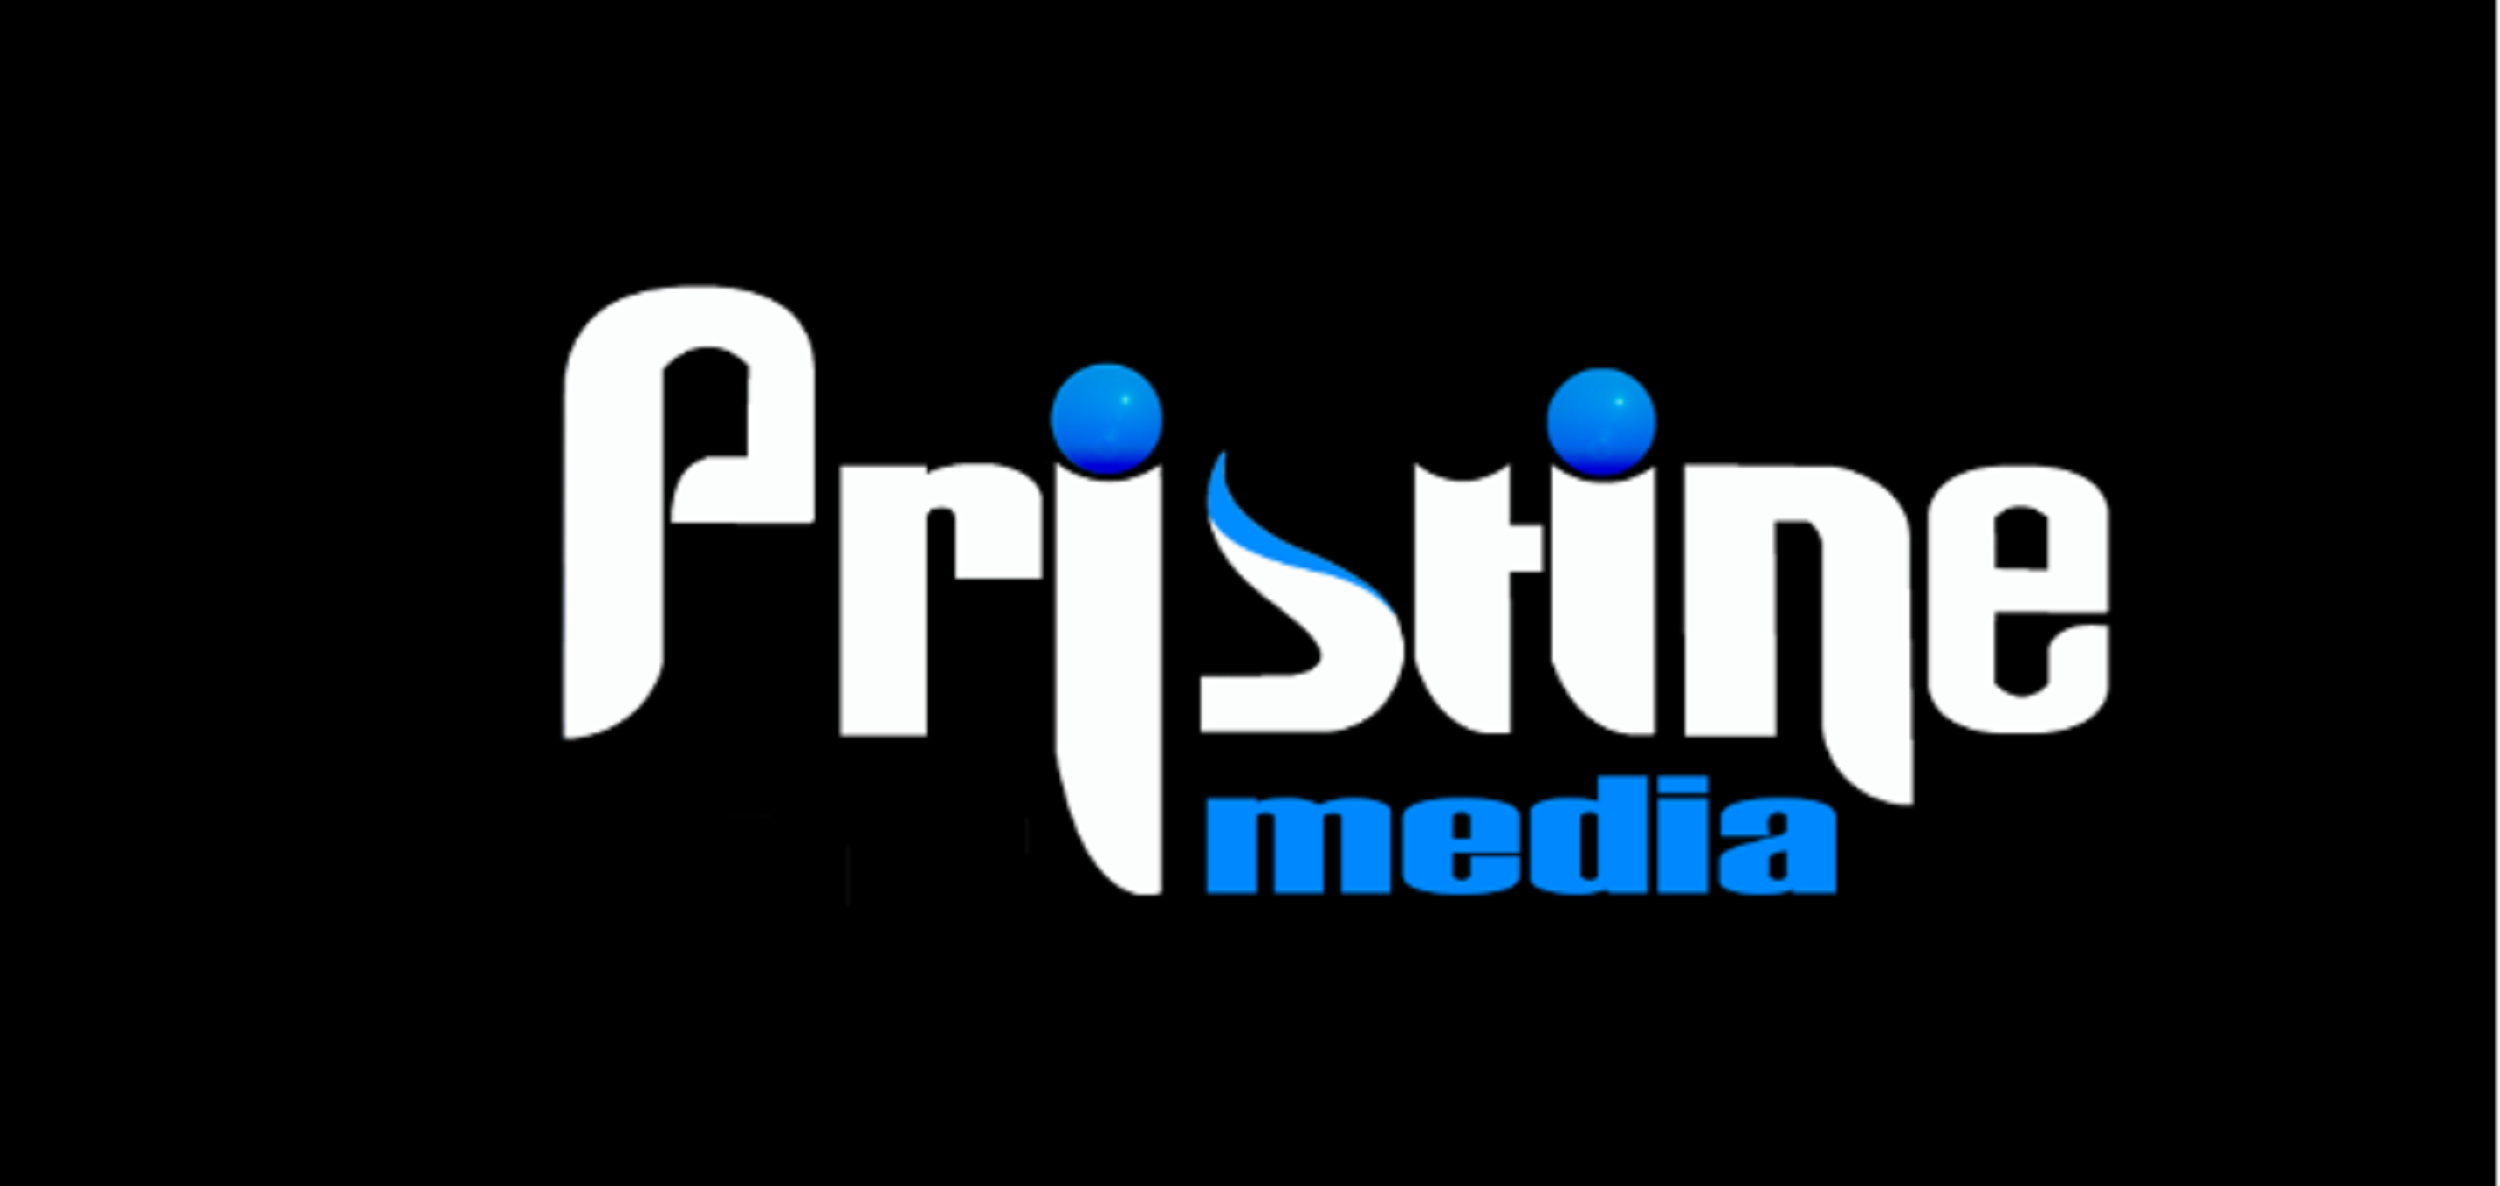 Pristine I Media